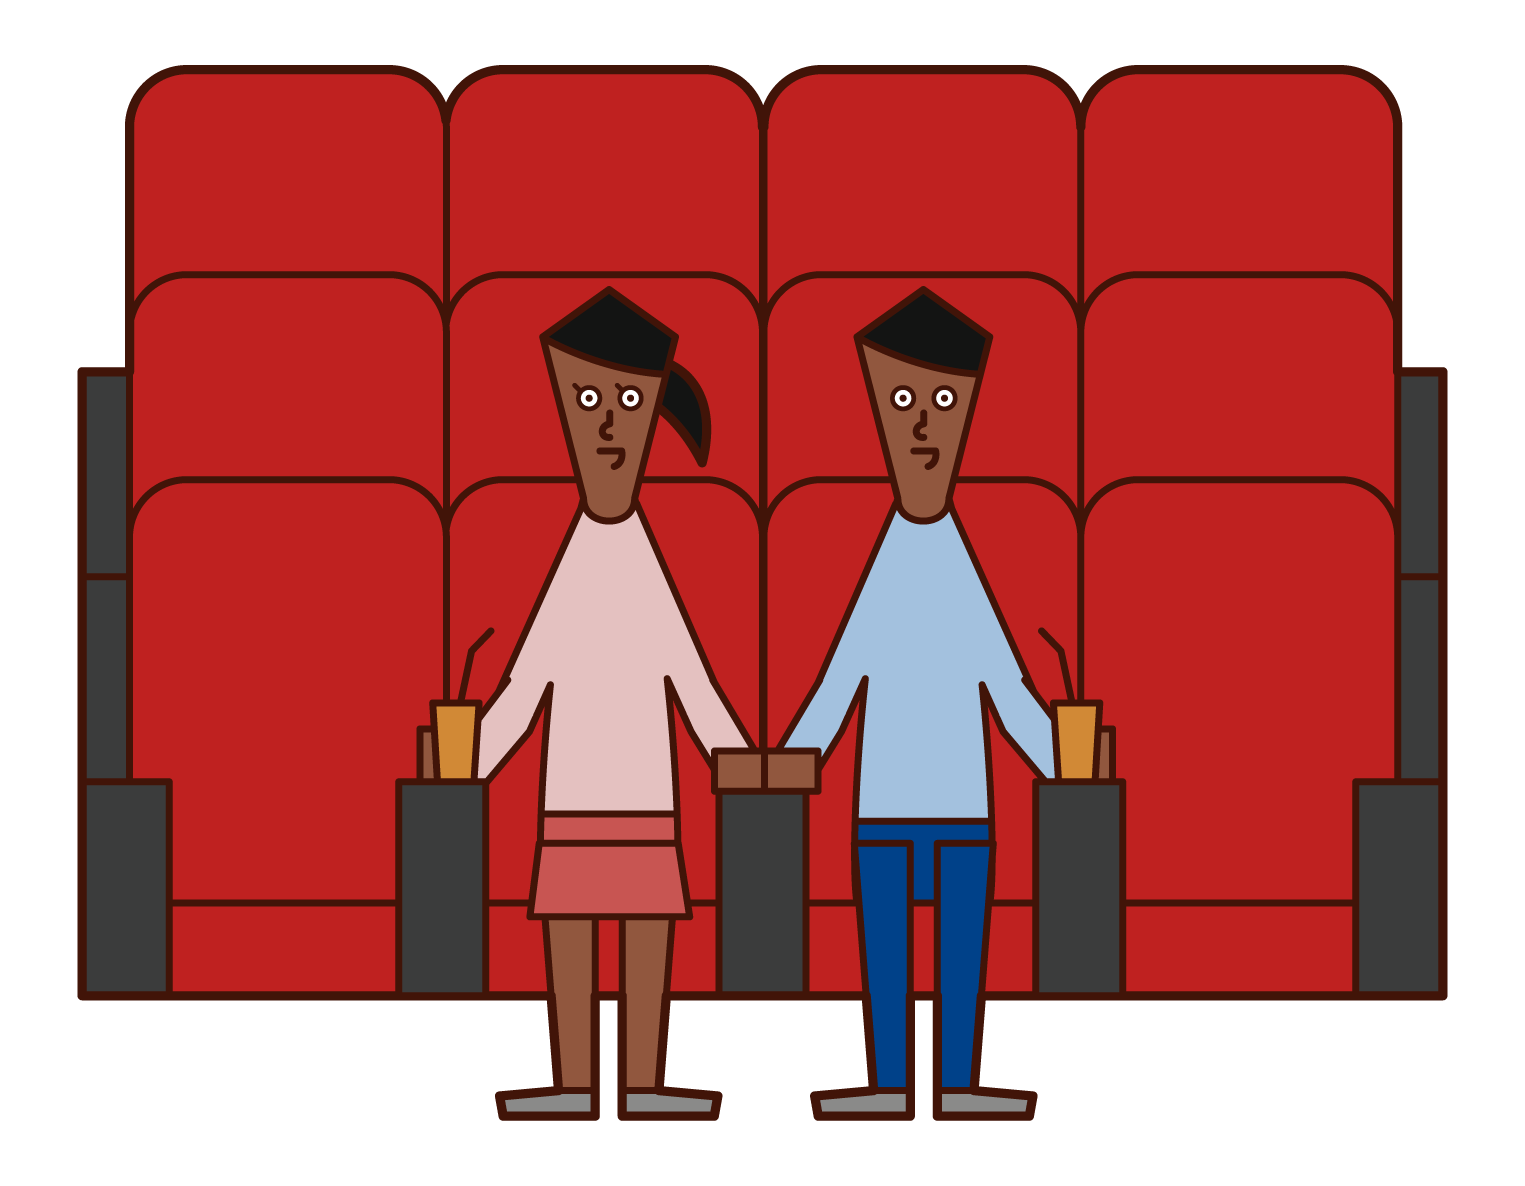 映画館で映画を見る人たちのイラスト